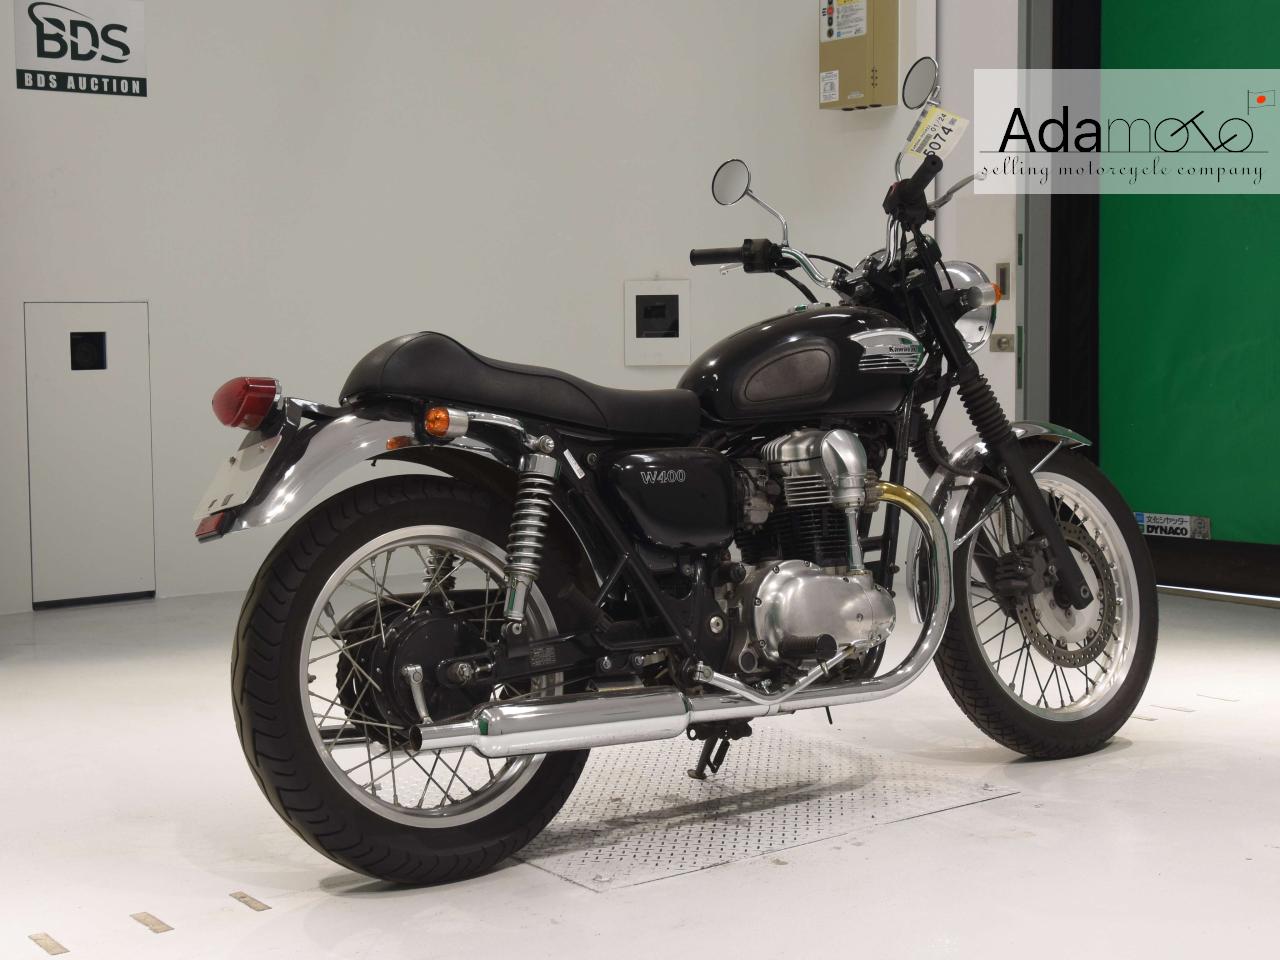 Kawasaki W400 - Adamoto - Motorcycles from Japan